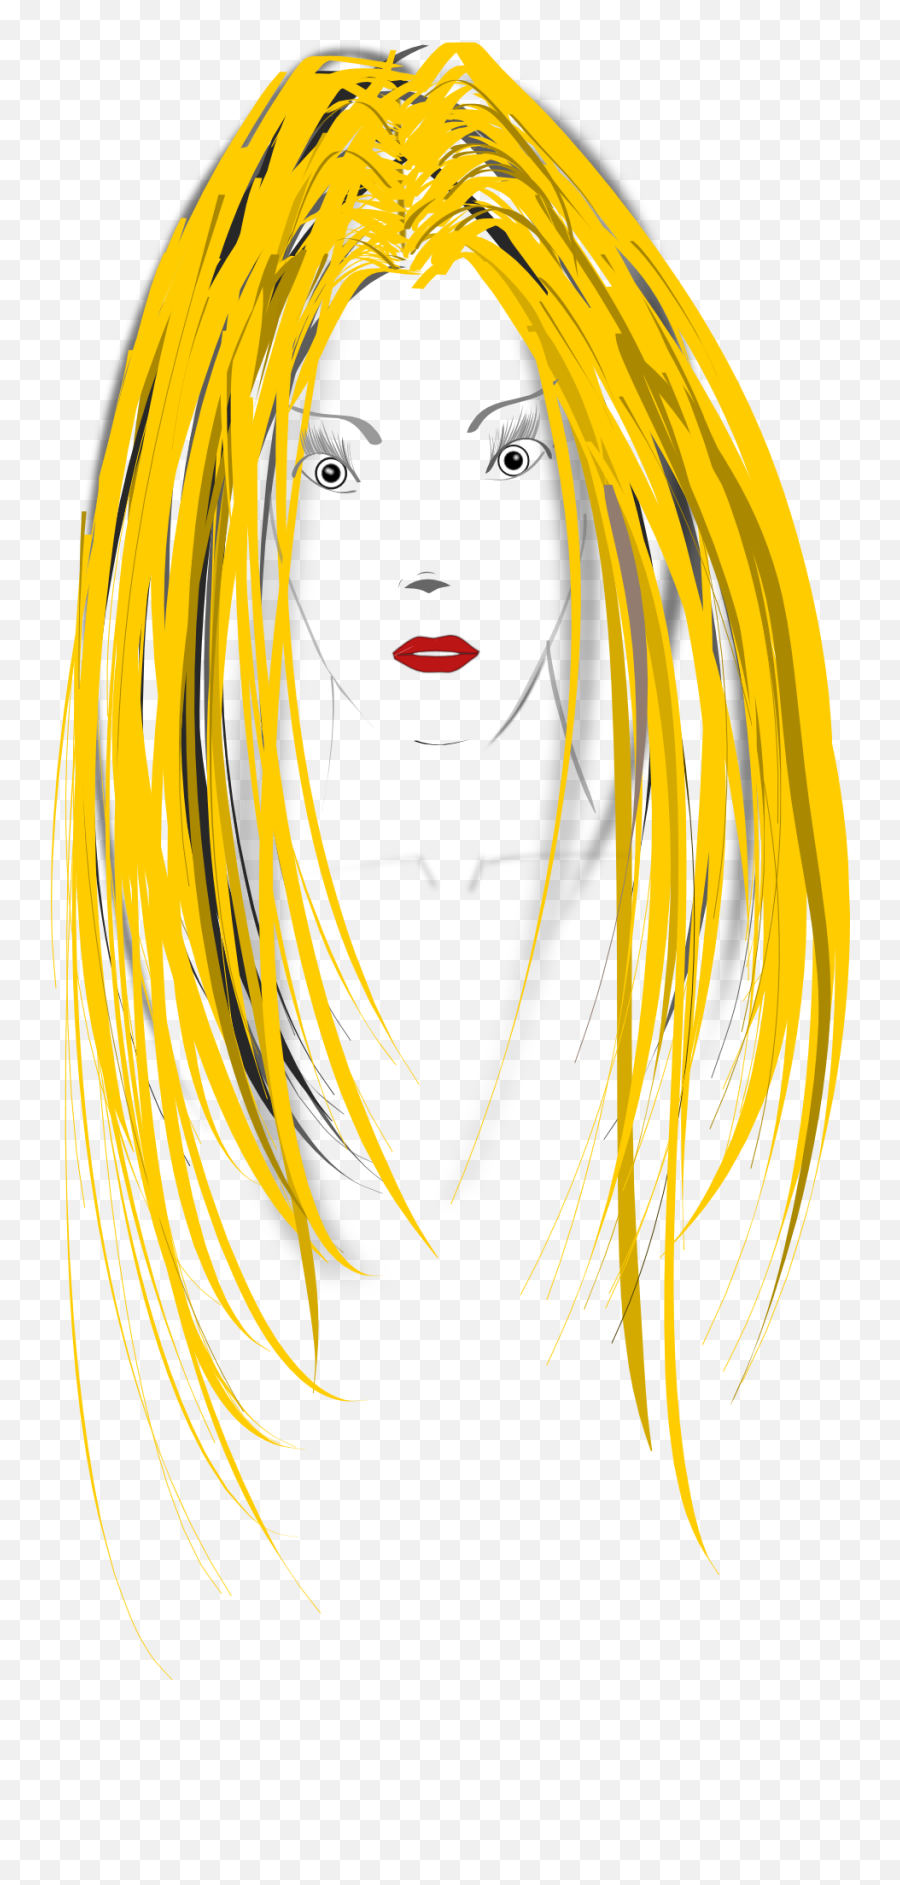 Girl Blonde Drawing Free Image Download Emoji,Woman Blonde Hair Emoji